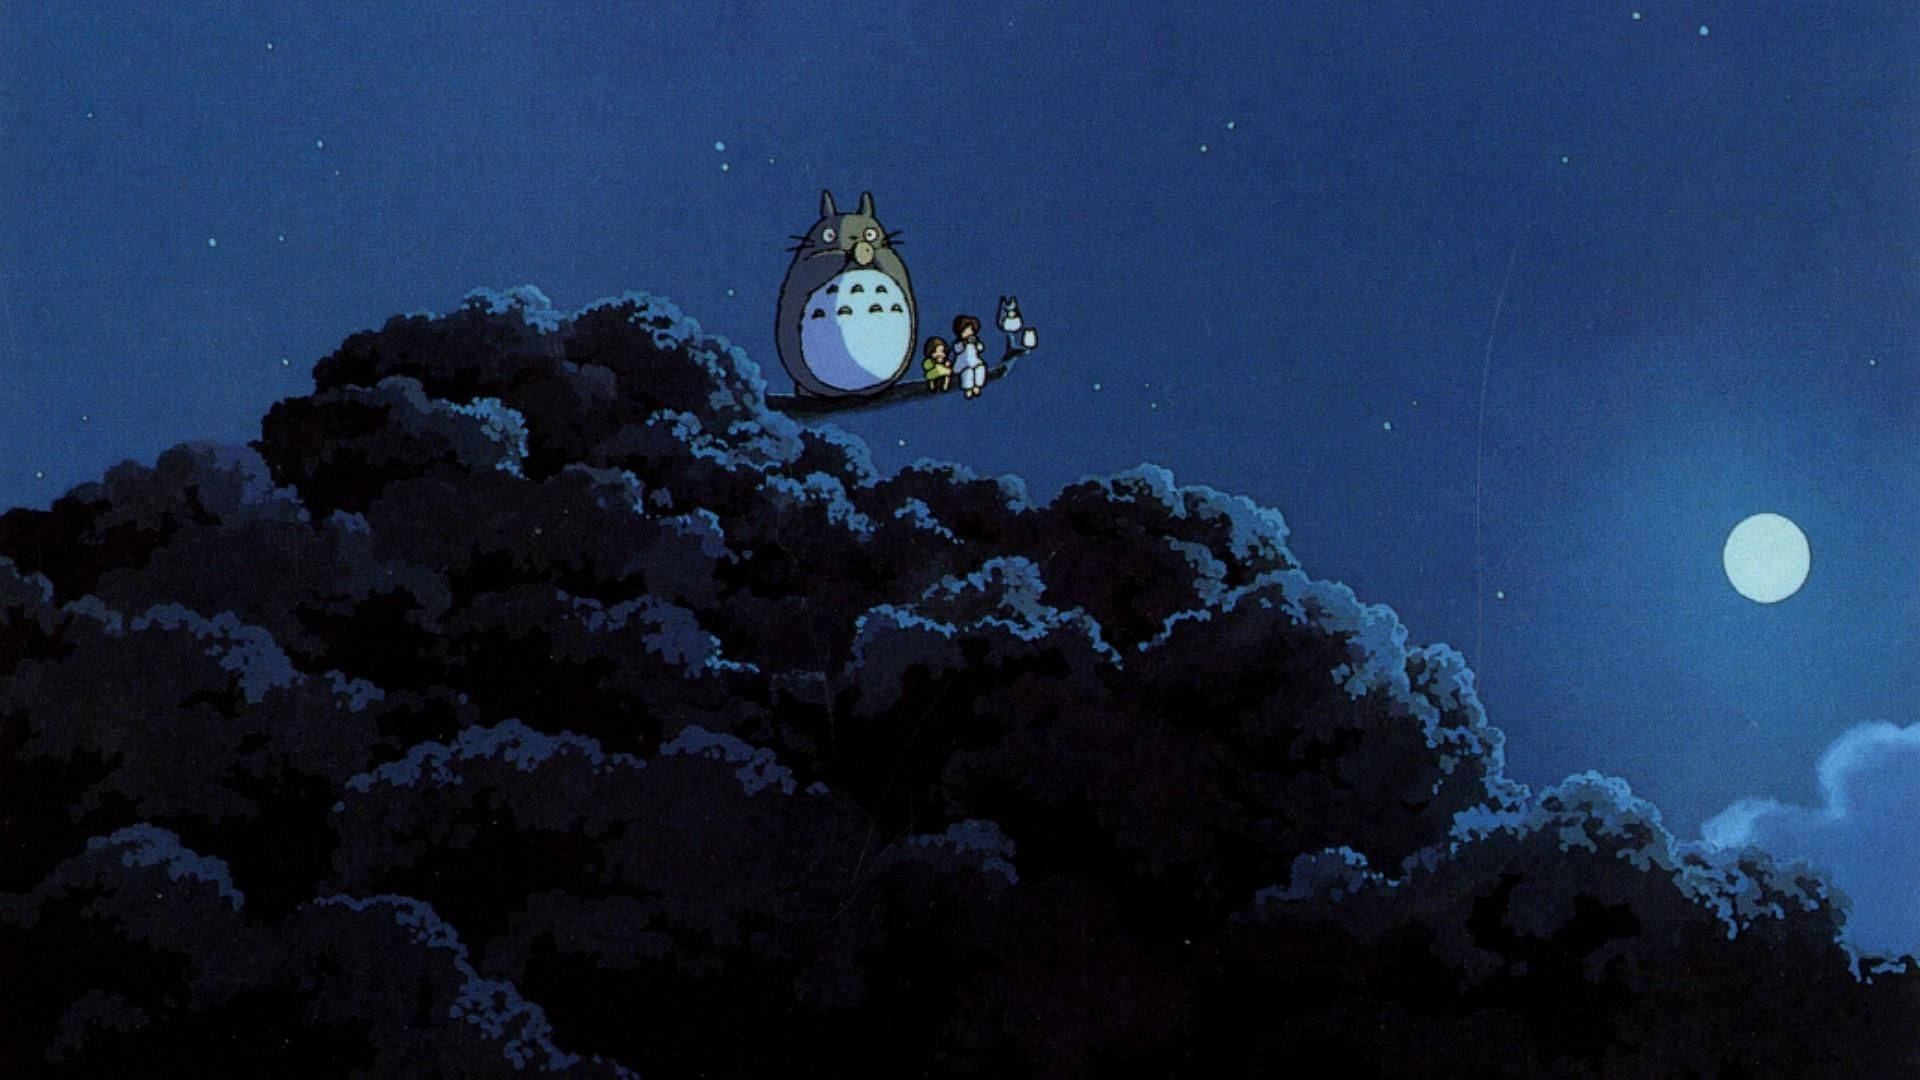 Studio Ghibli My Neighbor Totoro Background